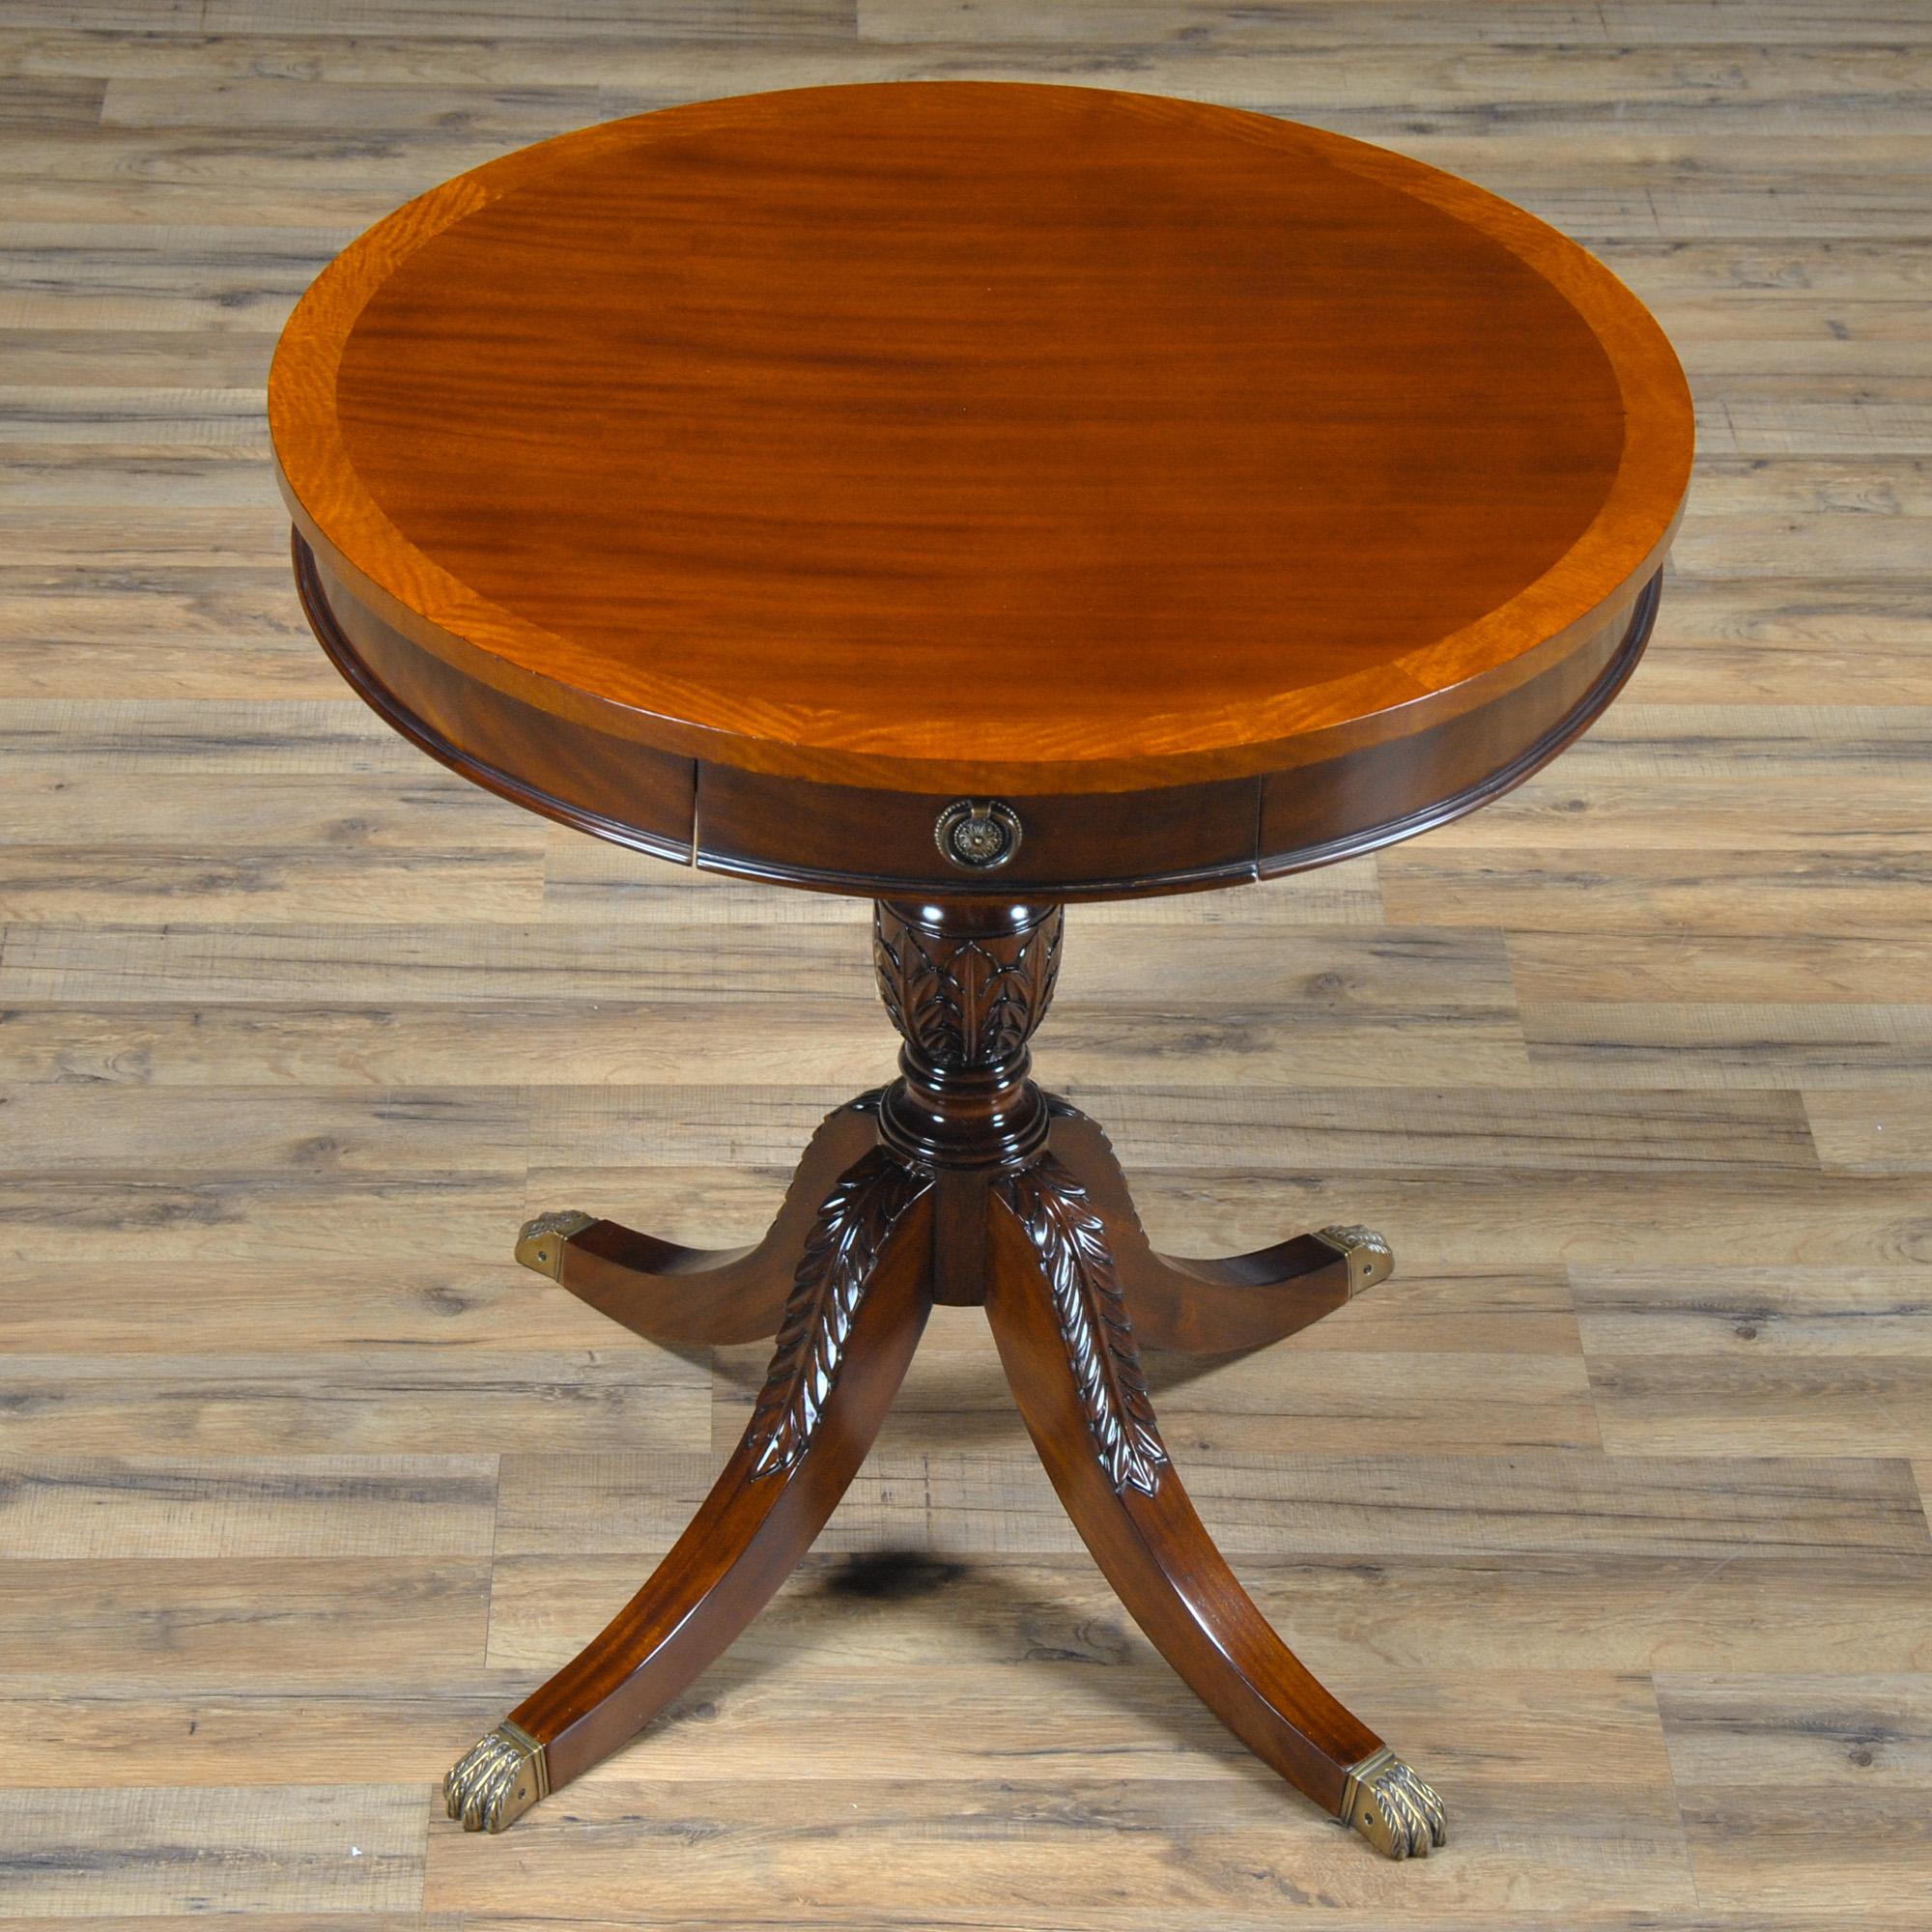 L'élégante et raffinée table tambour à un tiroir de Niagara Furniture est dotée d'une excellente quincaillerie, ainsi que d'un bord à bandes en bois satiné. La partie tambour de la table est fixée à une base en acajou massif, sculptée d'acanthes et